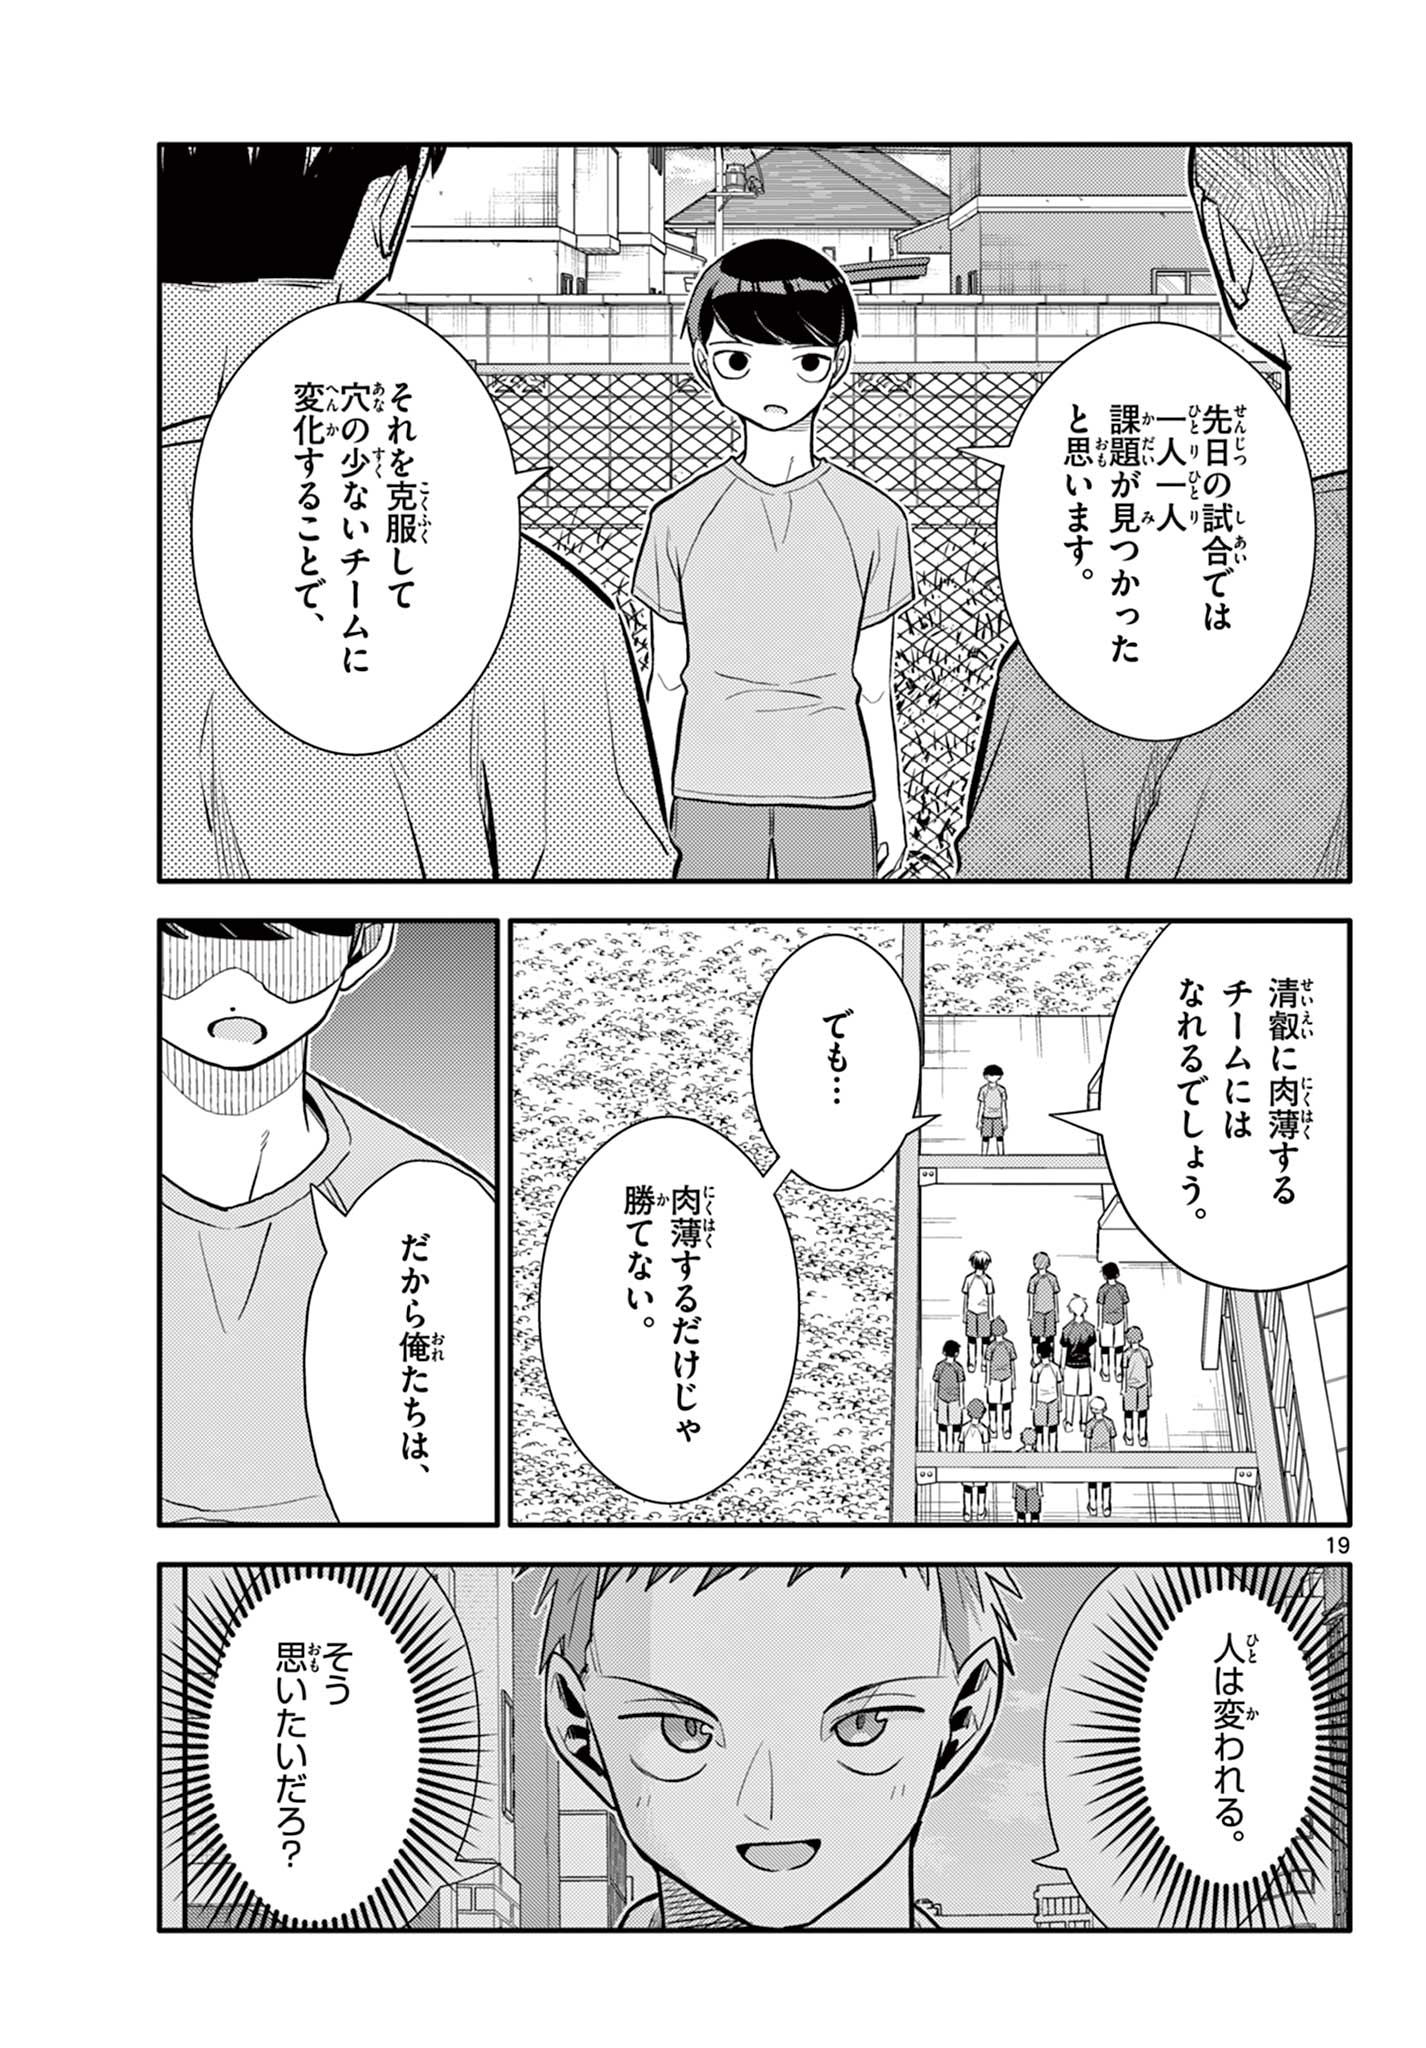 Chiisai Boku no Haru - Chapter 20 - Page 19